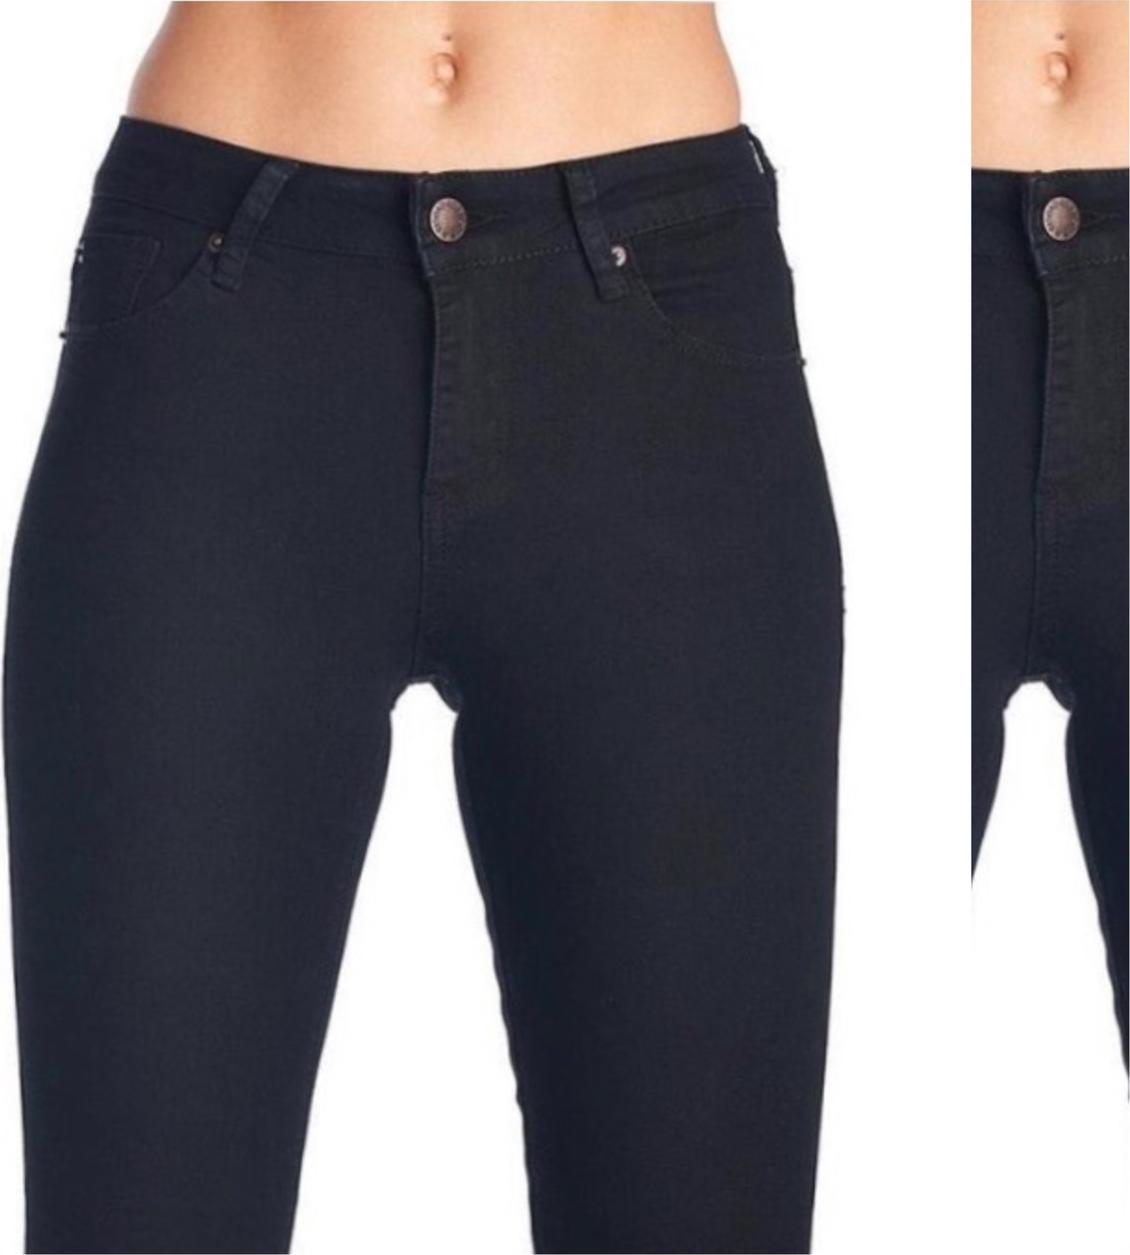 [ SIZE ĐẠI 60kg~90kg] Quần jean dài đen tuyền big size co dãn mạnh vải jean mềm lưng cao 2700 có rách gối